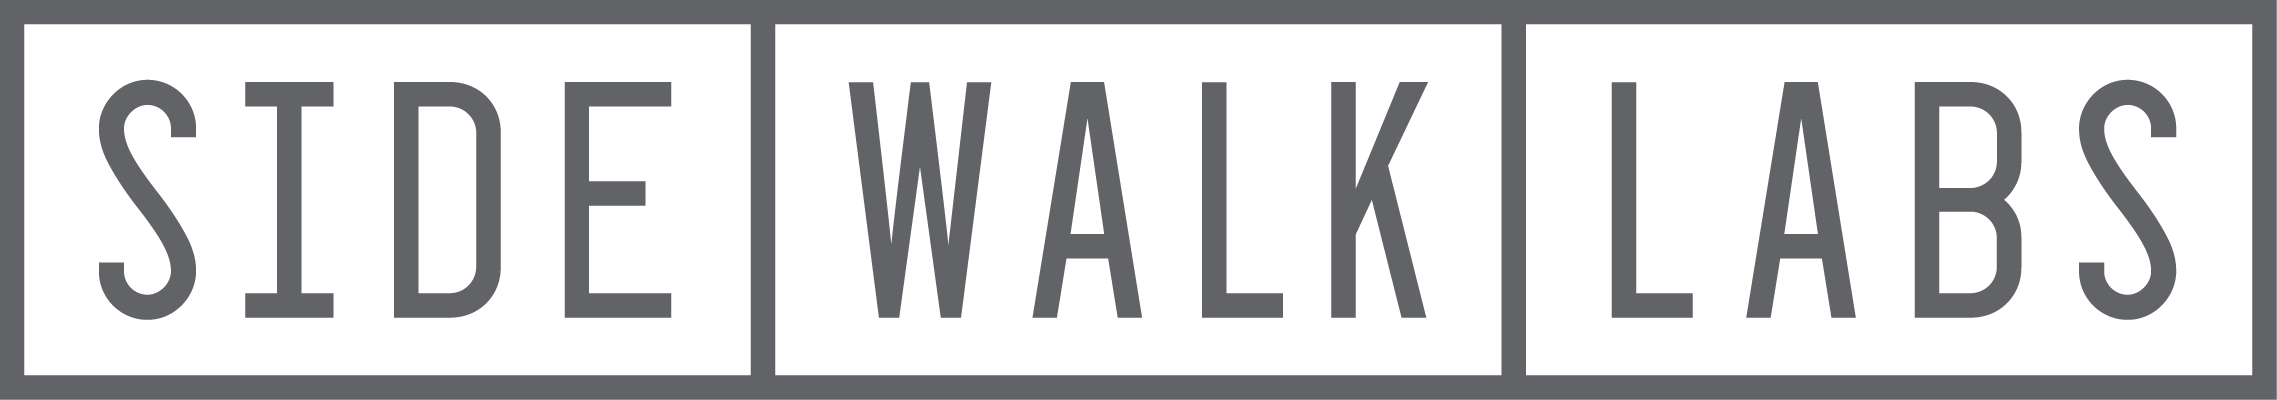 sidewalklabl logo